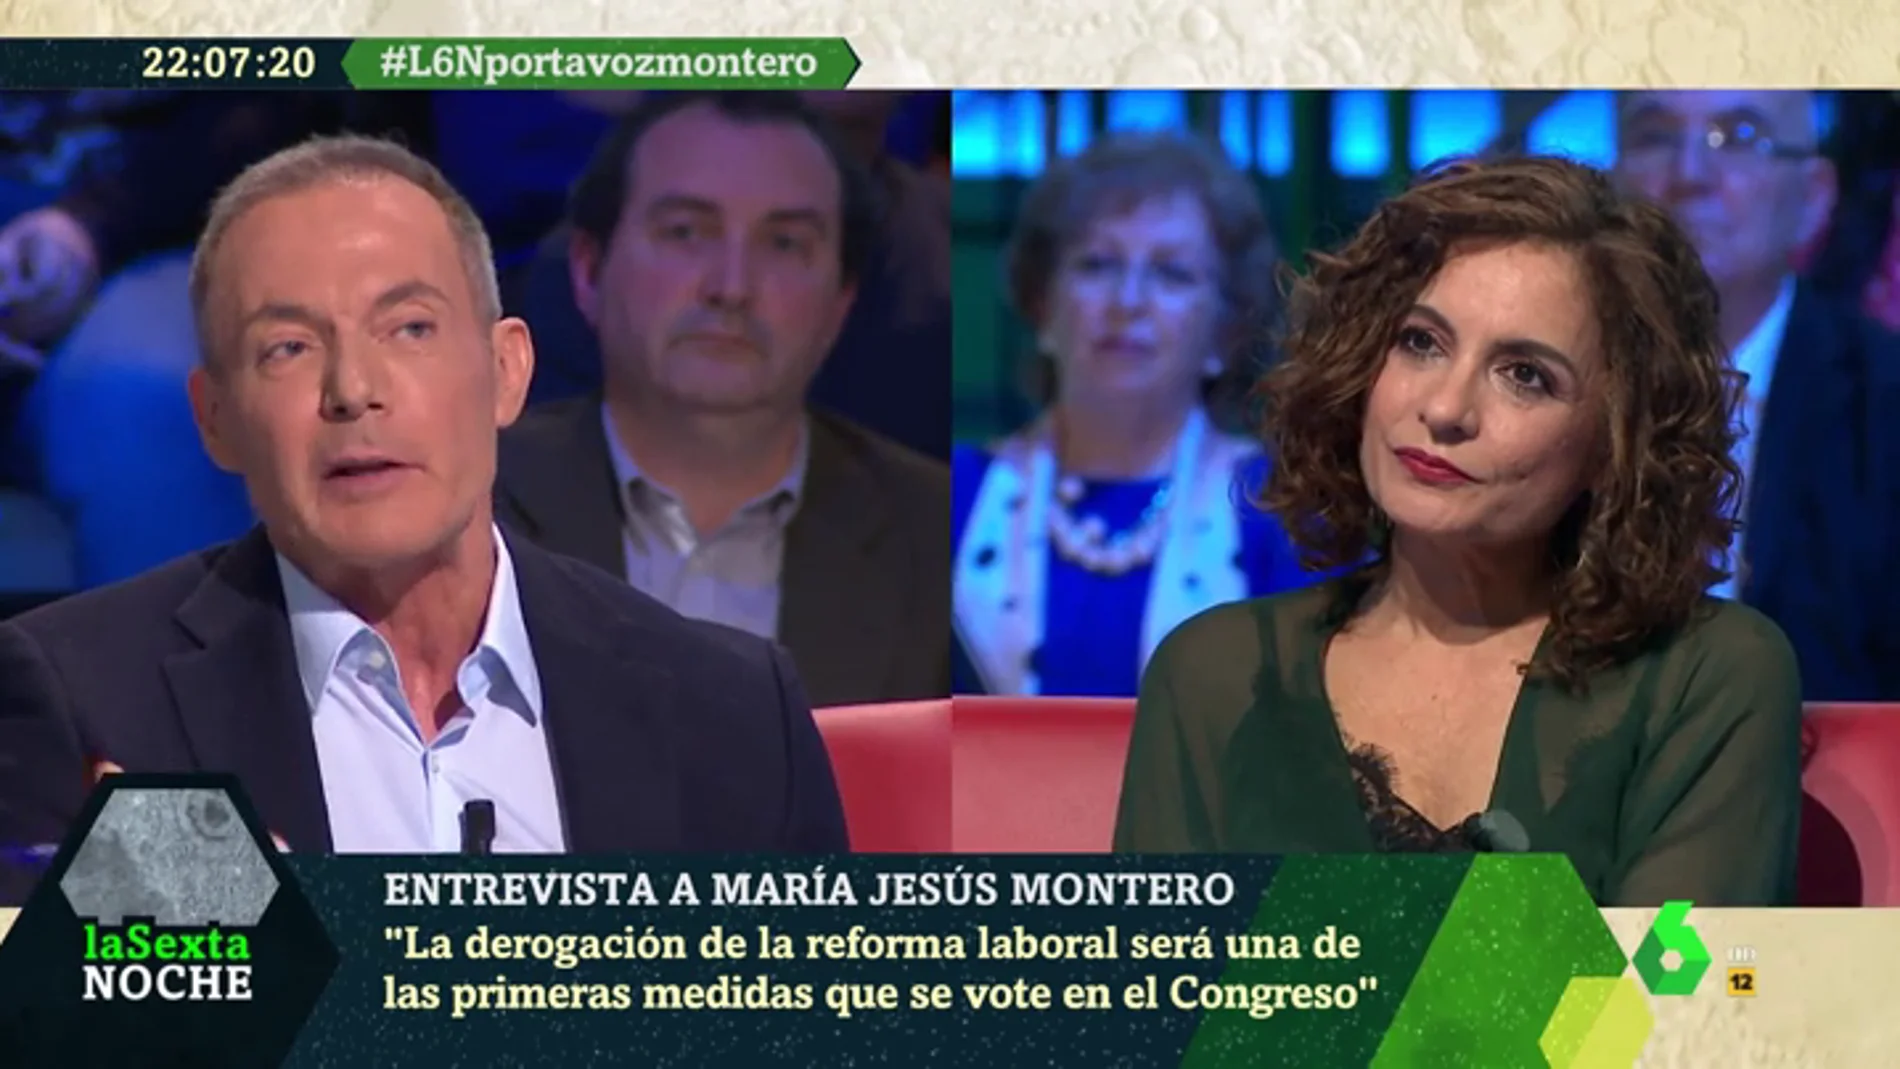 María Jesús Montero afirma que se derogarán los aspectos más lesivos de la reforma laboral: "Será una de las primeras medidas"